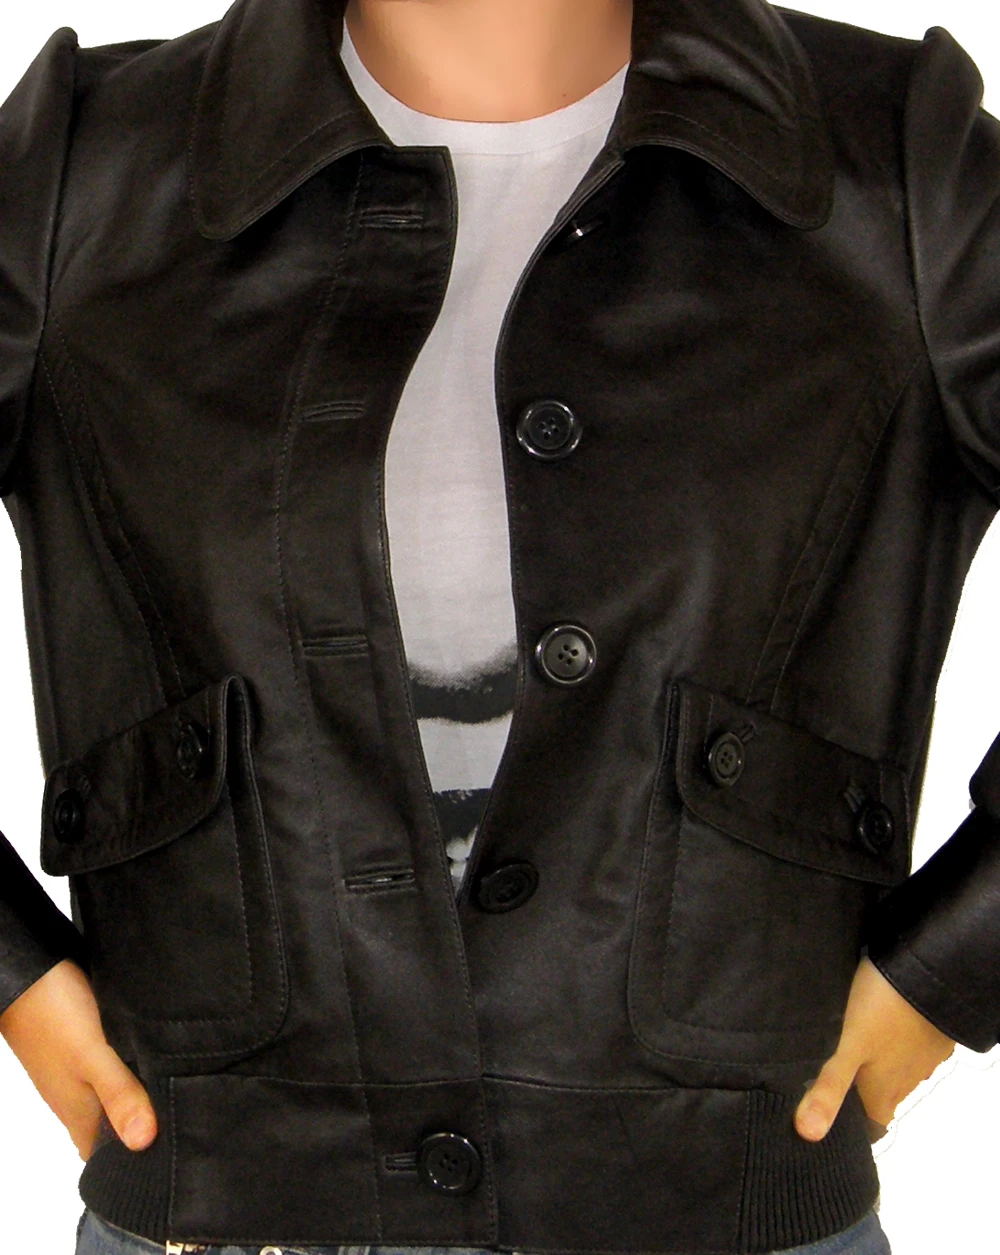 Eureka Sew button leather jacket